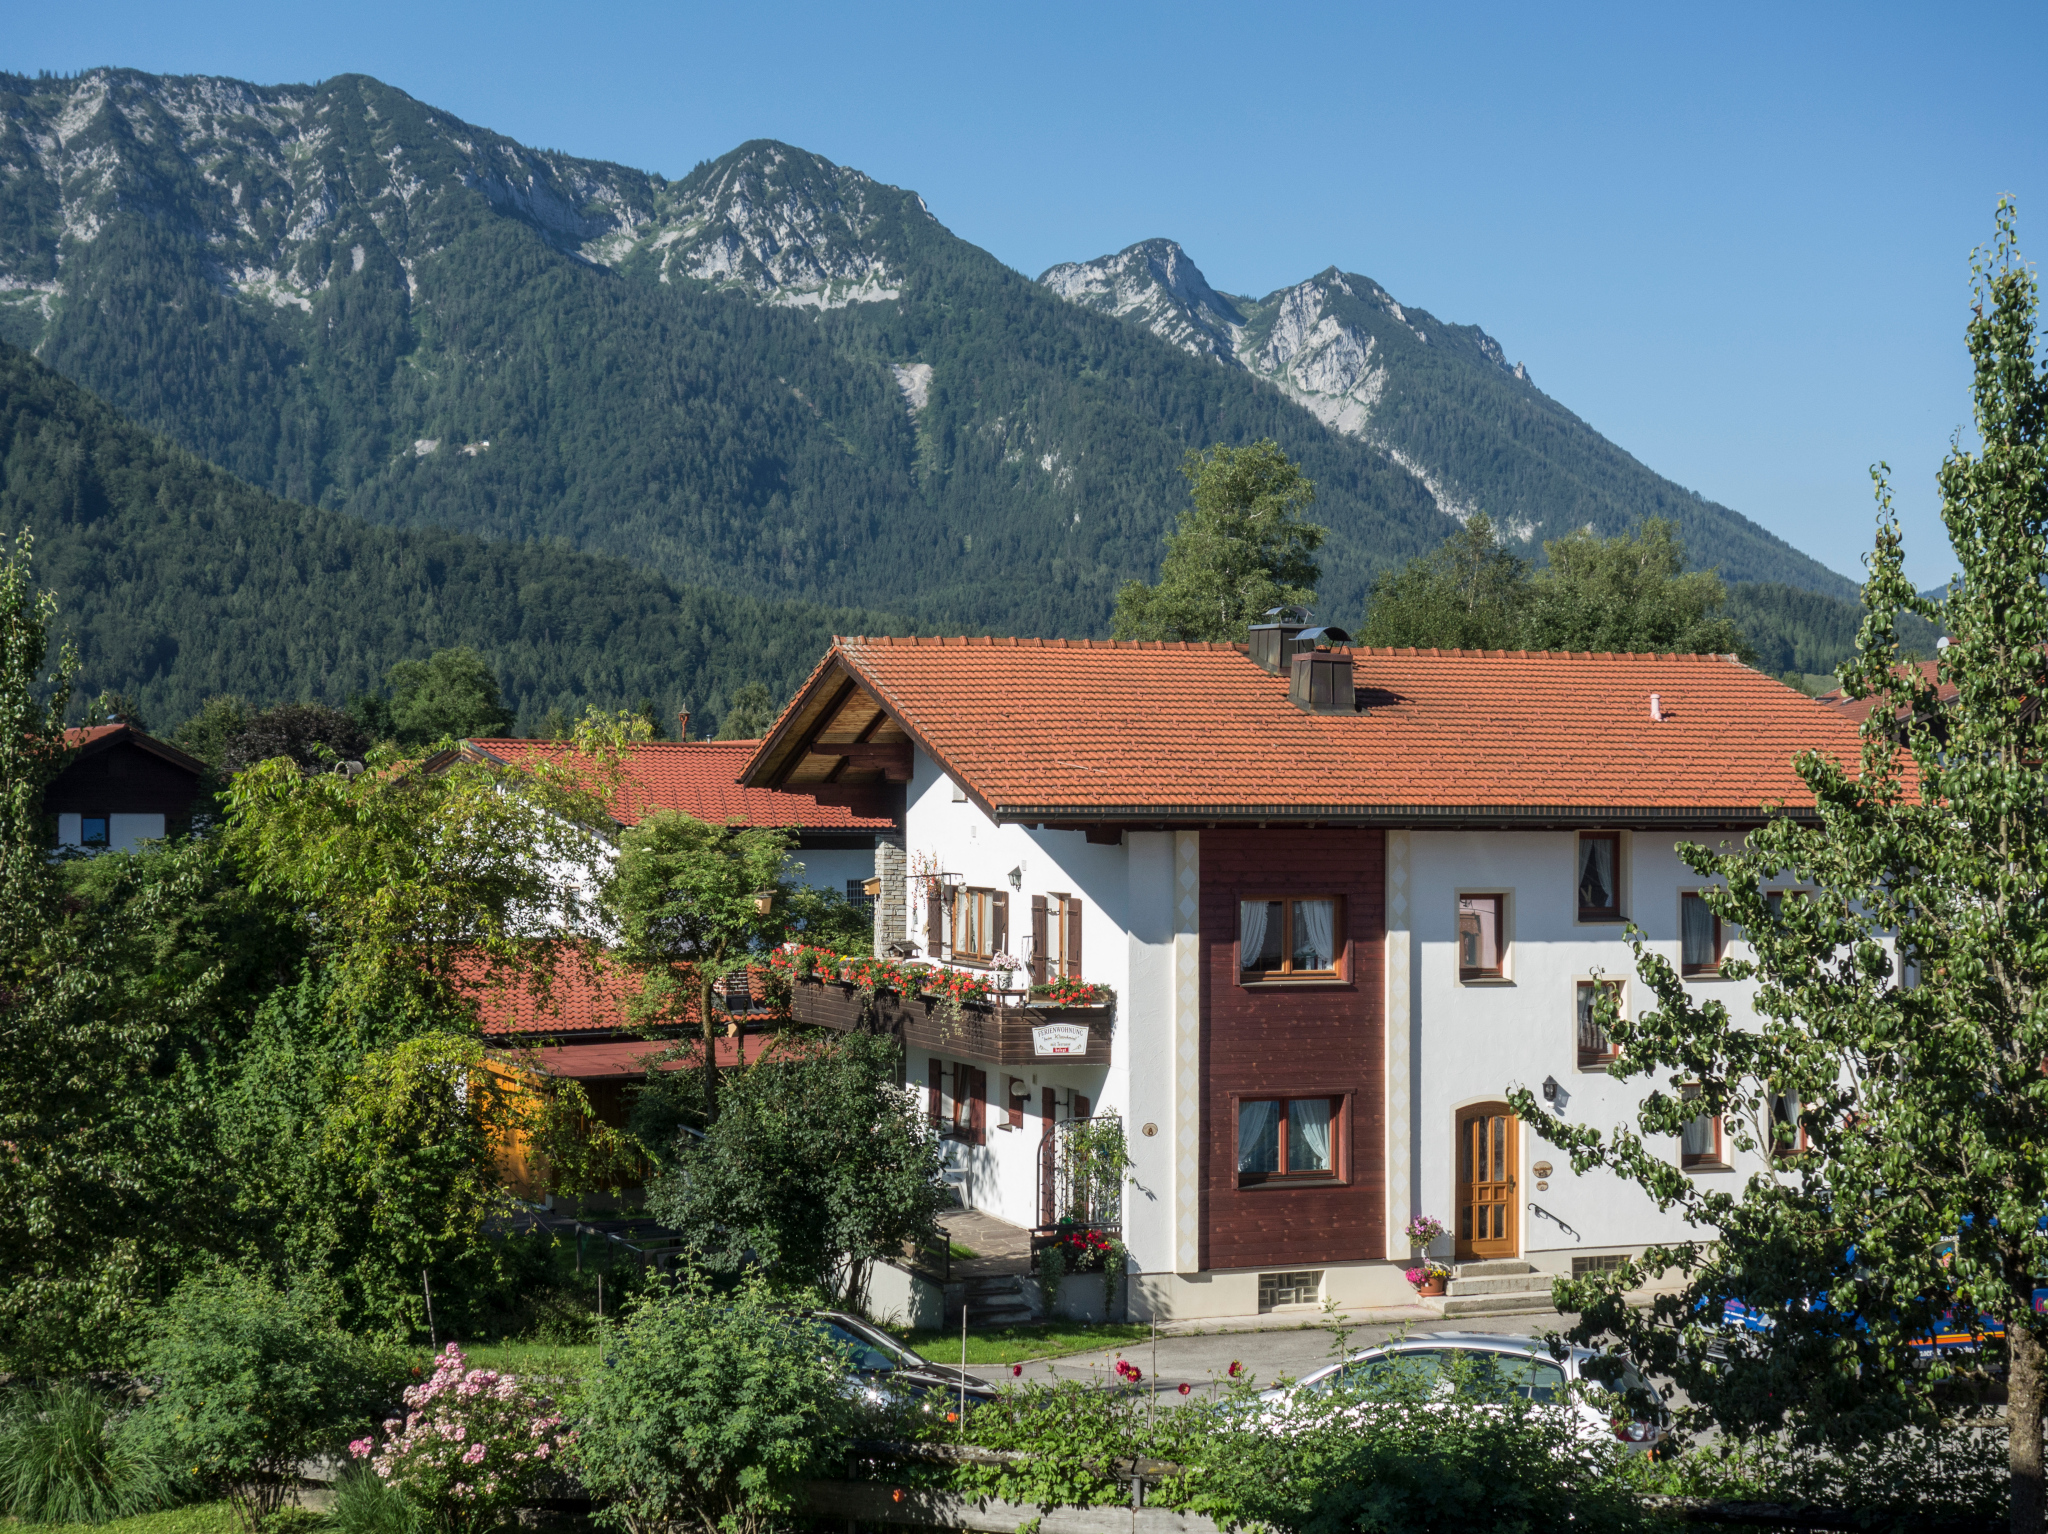 Beim Wirtschmied - Chiemgau Karte (DE Inzell). Fer Ferienwohnung in den Alpen